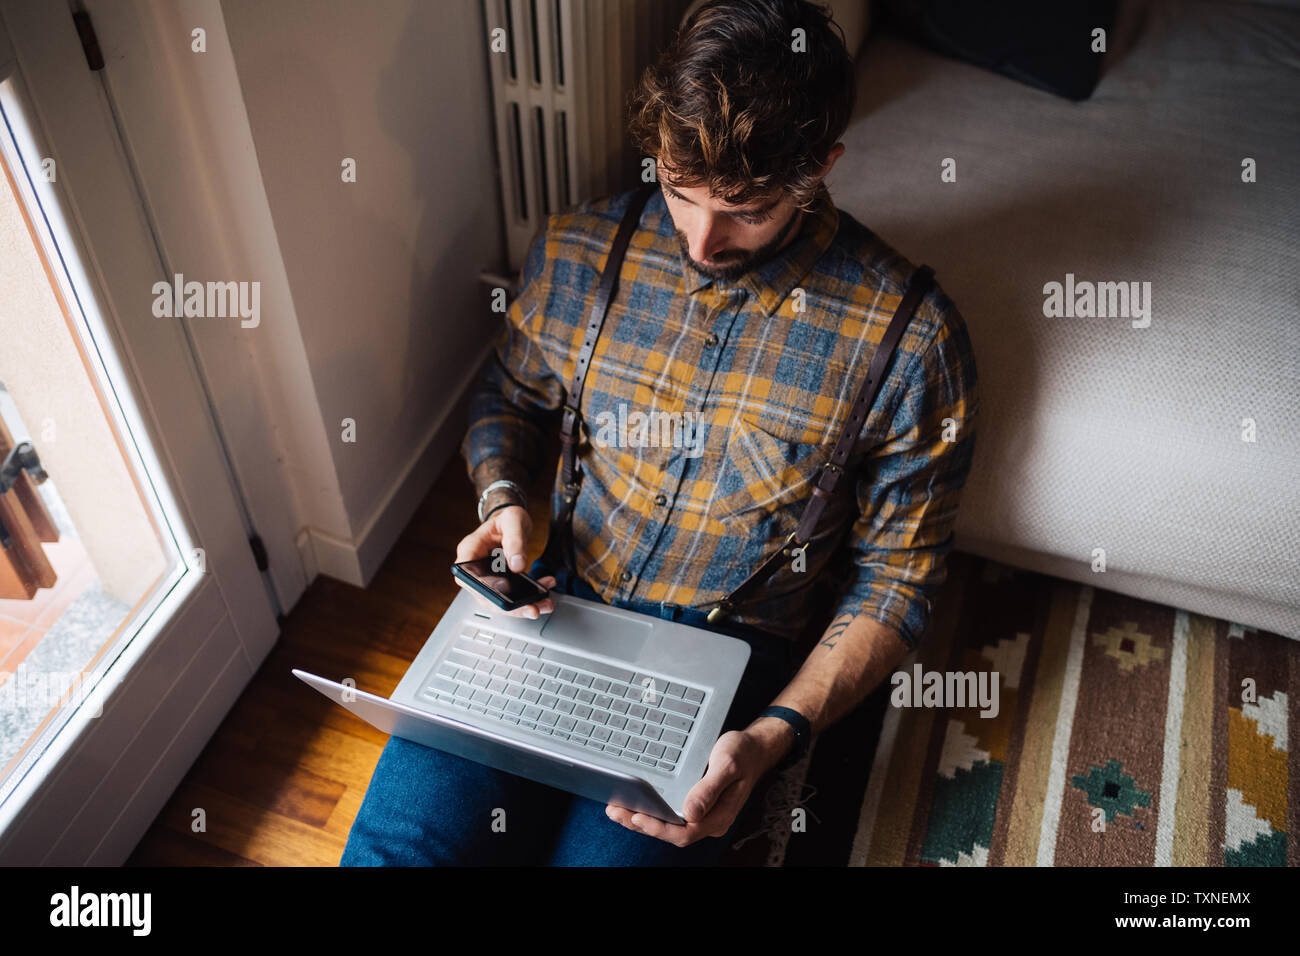 Mitad hombre adulto sentado en el suelo del cuarto de estar con ordenador portátil utilizando el smartphone Foto de stock